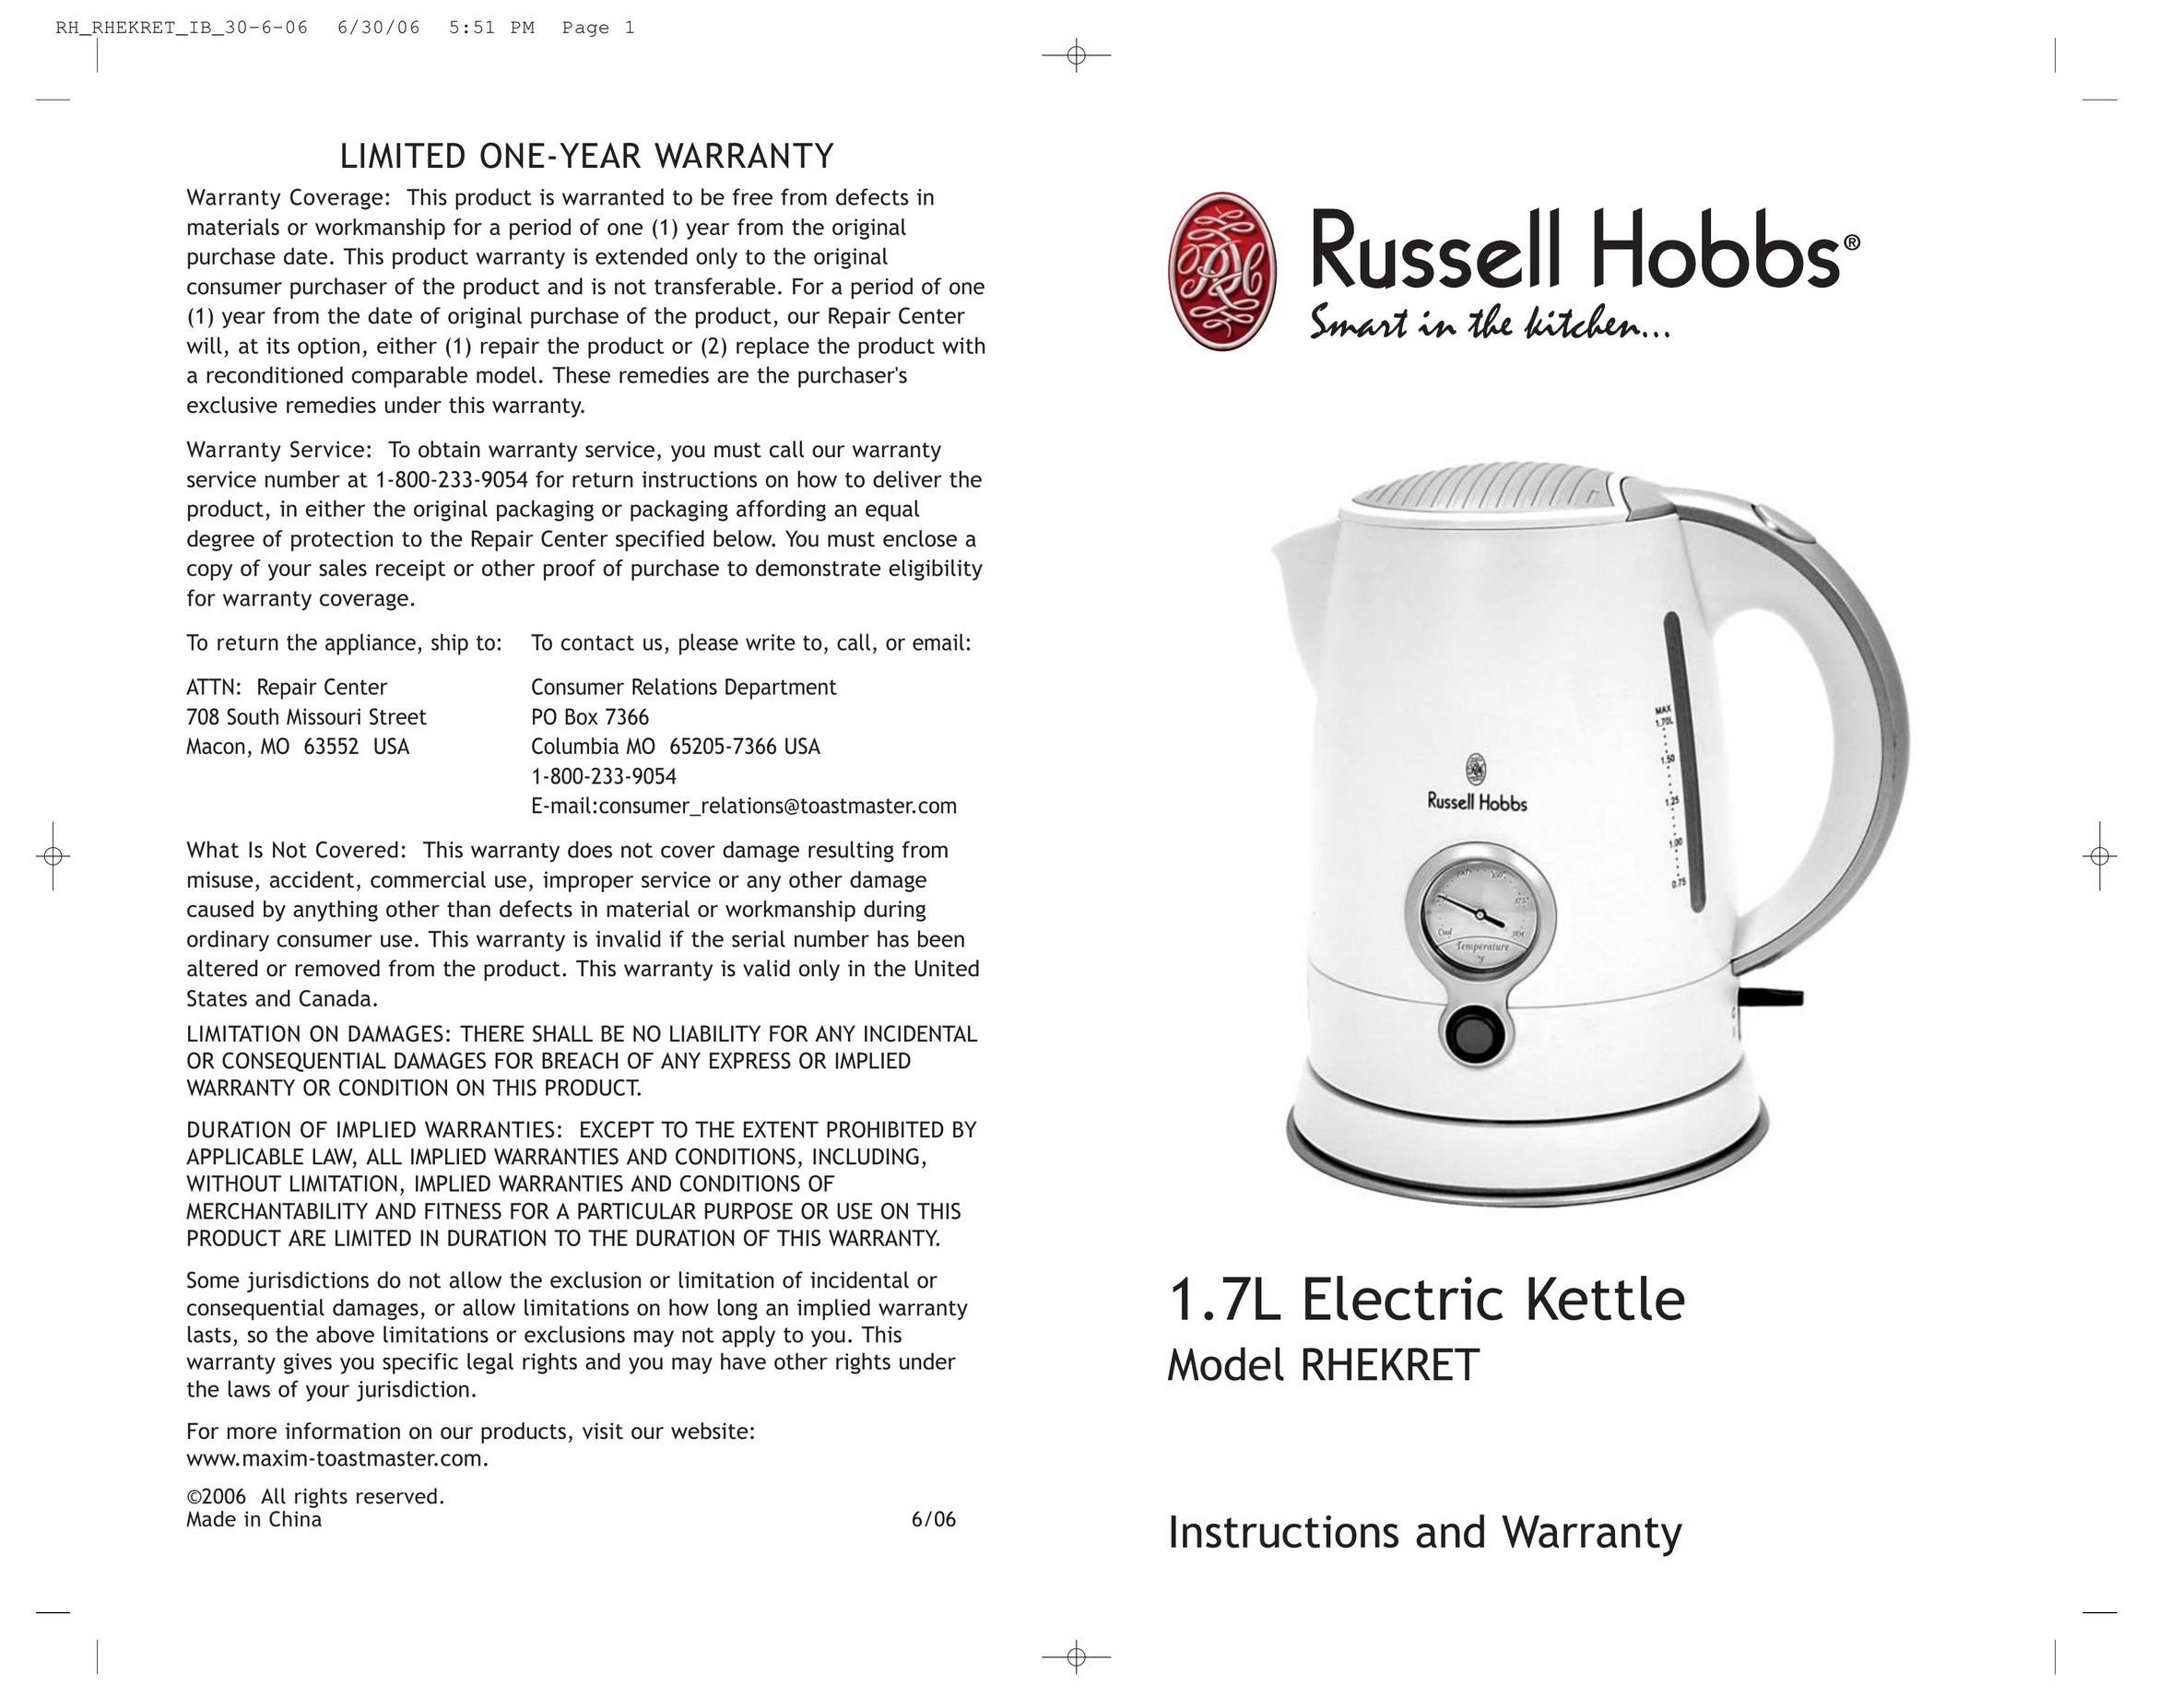 Toastmaster RHEKRET Hot Beverage Maker User Manual